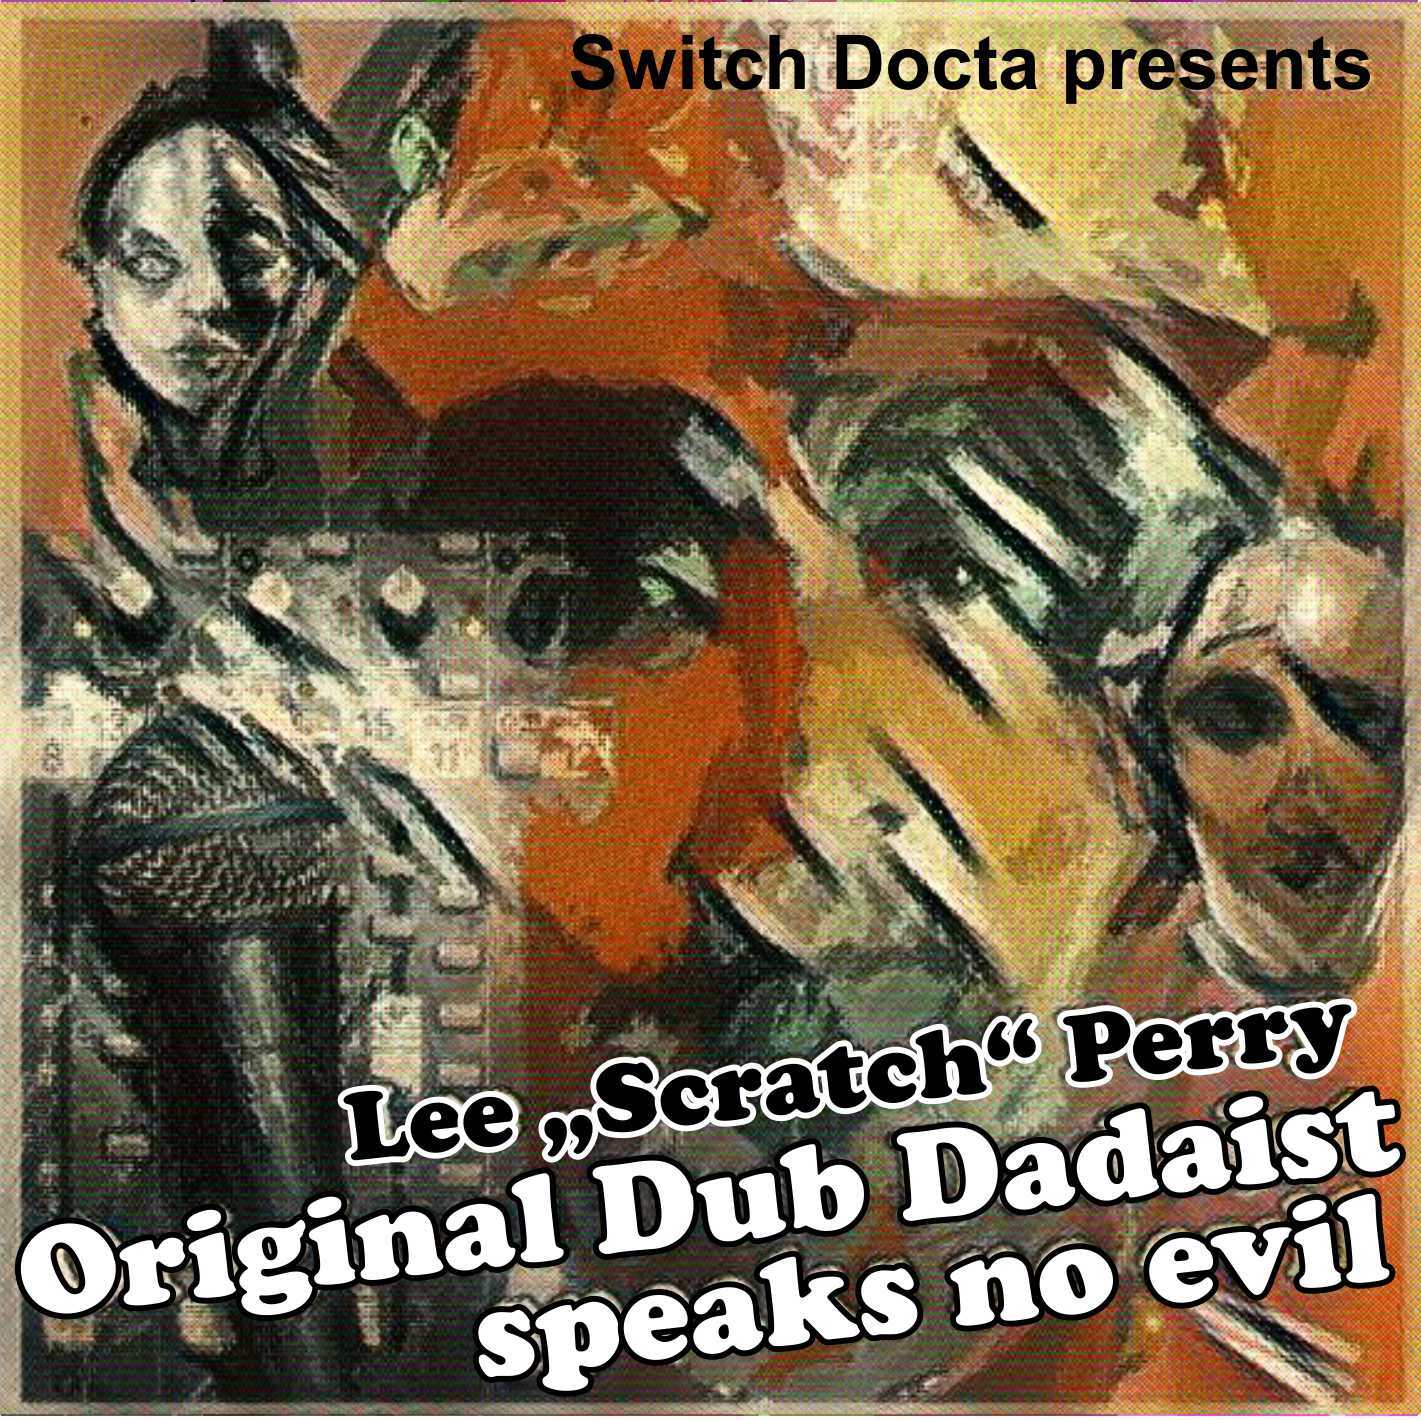 91_Original_Dub_Dadaist_COVER.jpg